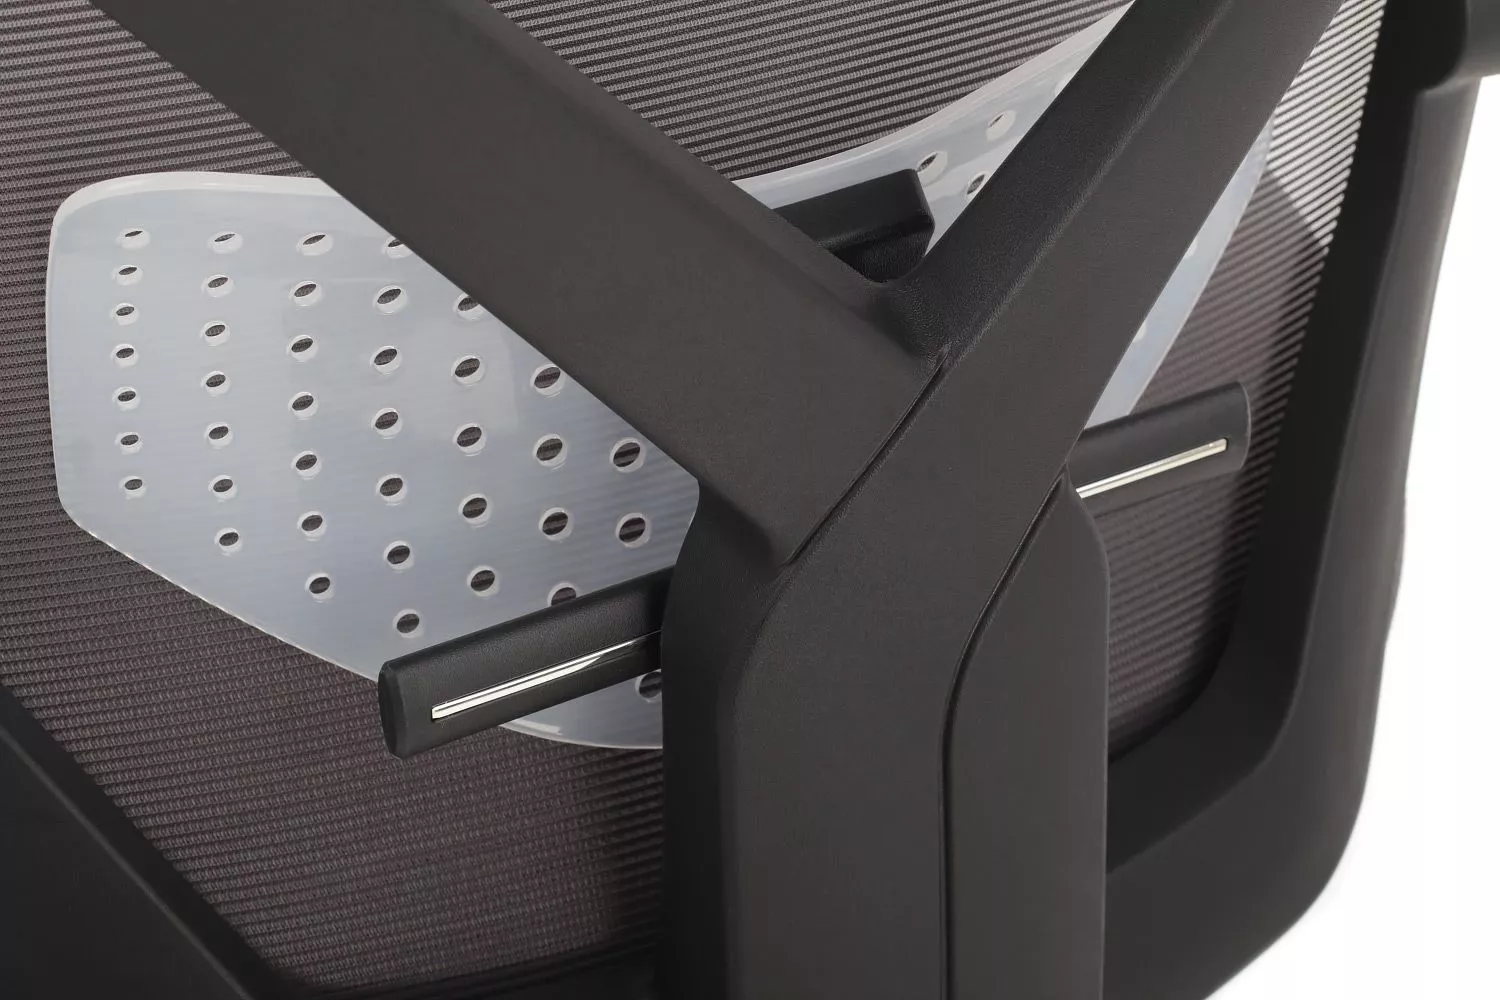 Кресло RIVA Chair OLIVER W-203 AC черный пластик / серый